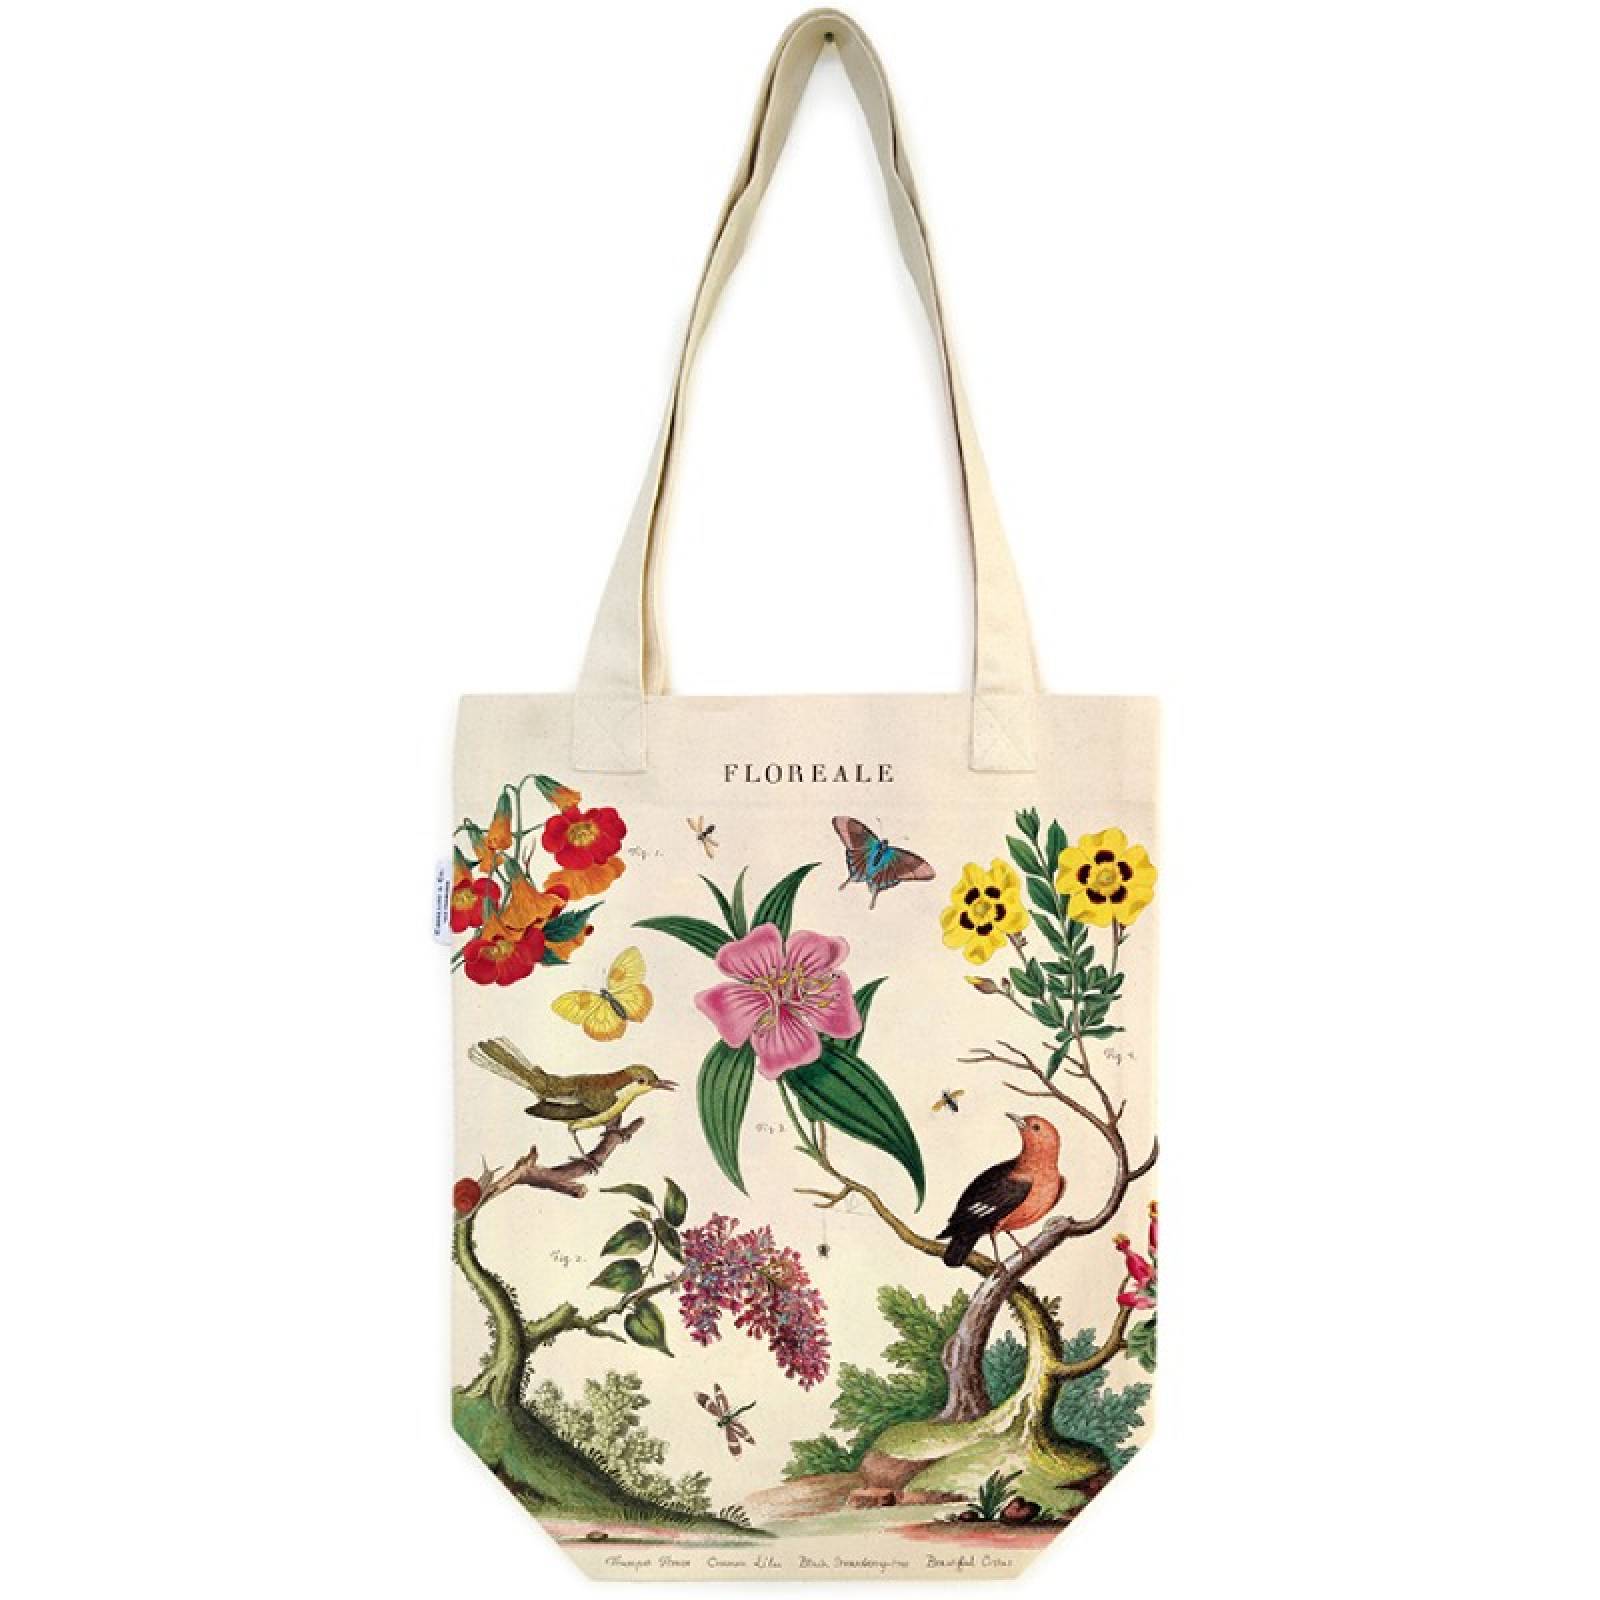 Floreale - Cotton Tote Bag By Cavallini thumbnails